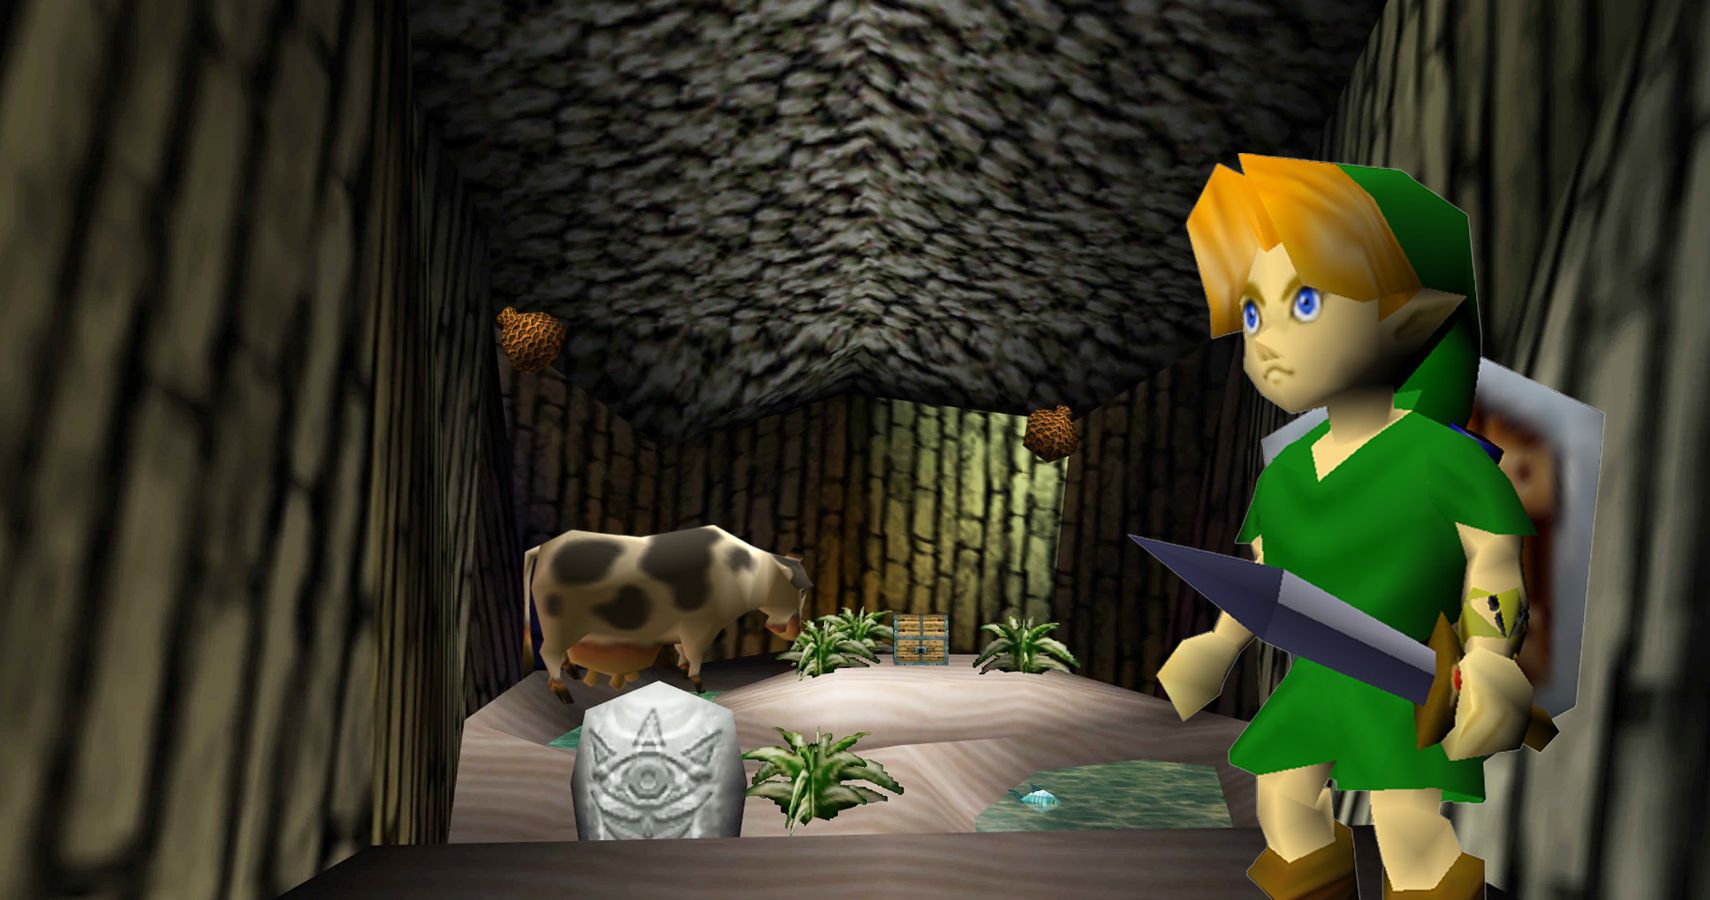 Legend of Zelda Ocarina of Time, Gold Skulltulas: Lost Woods 